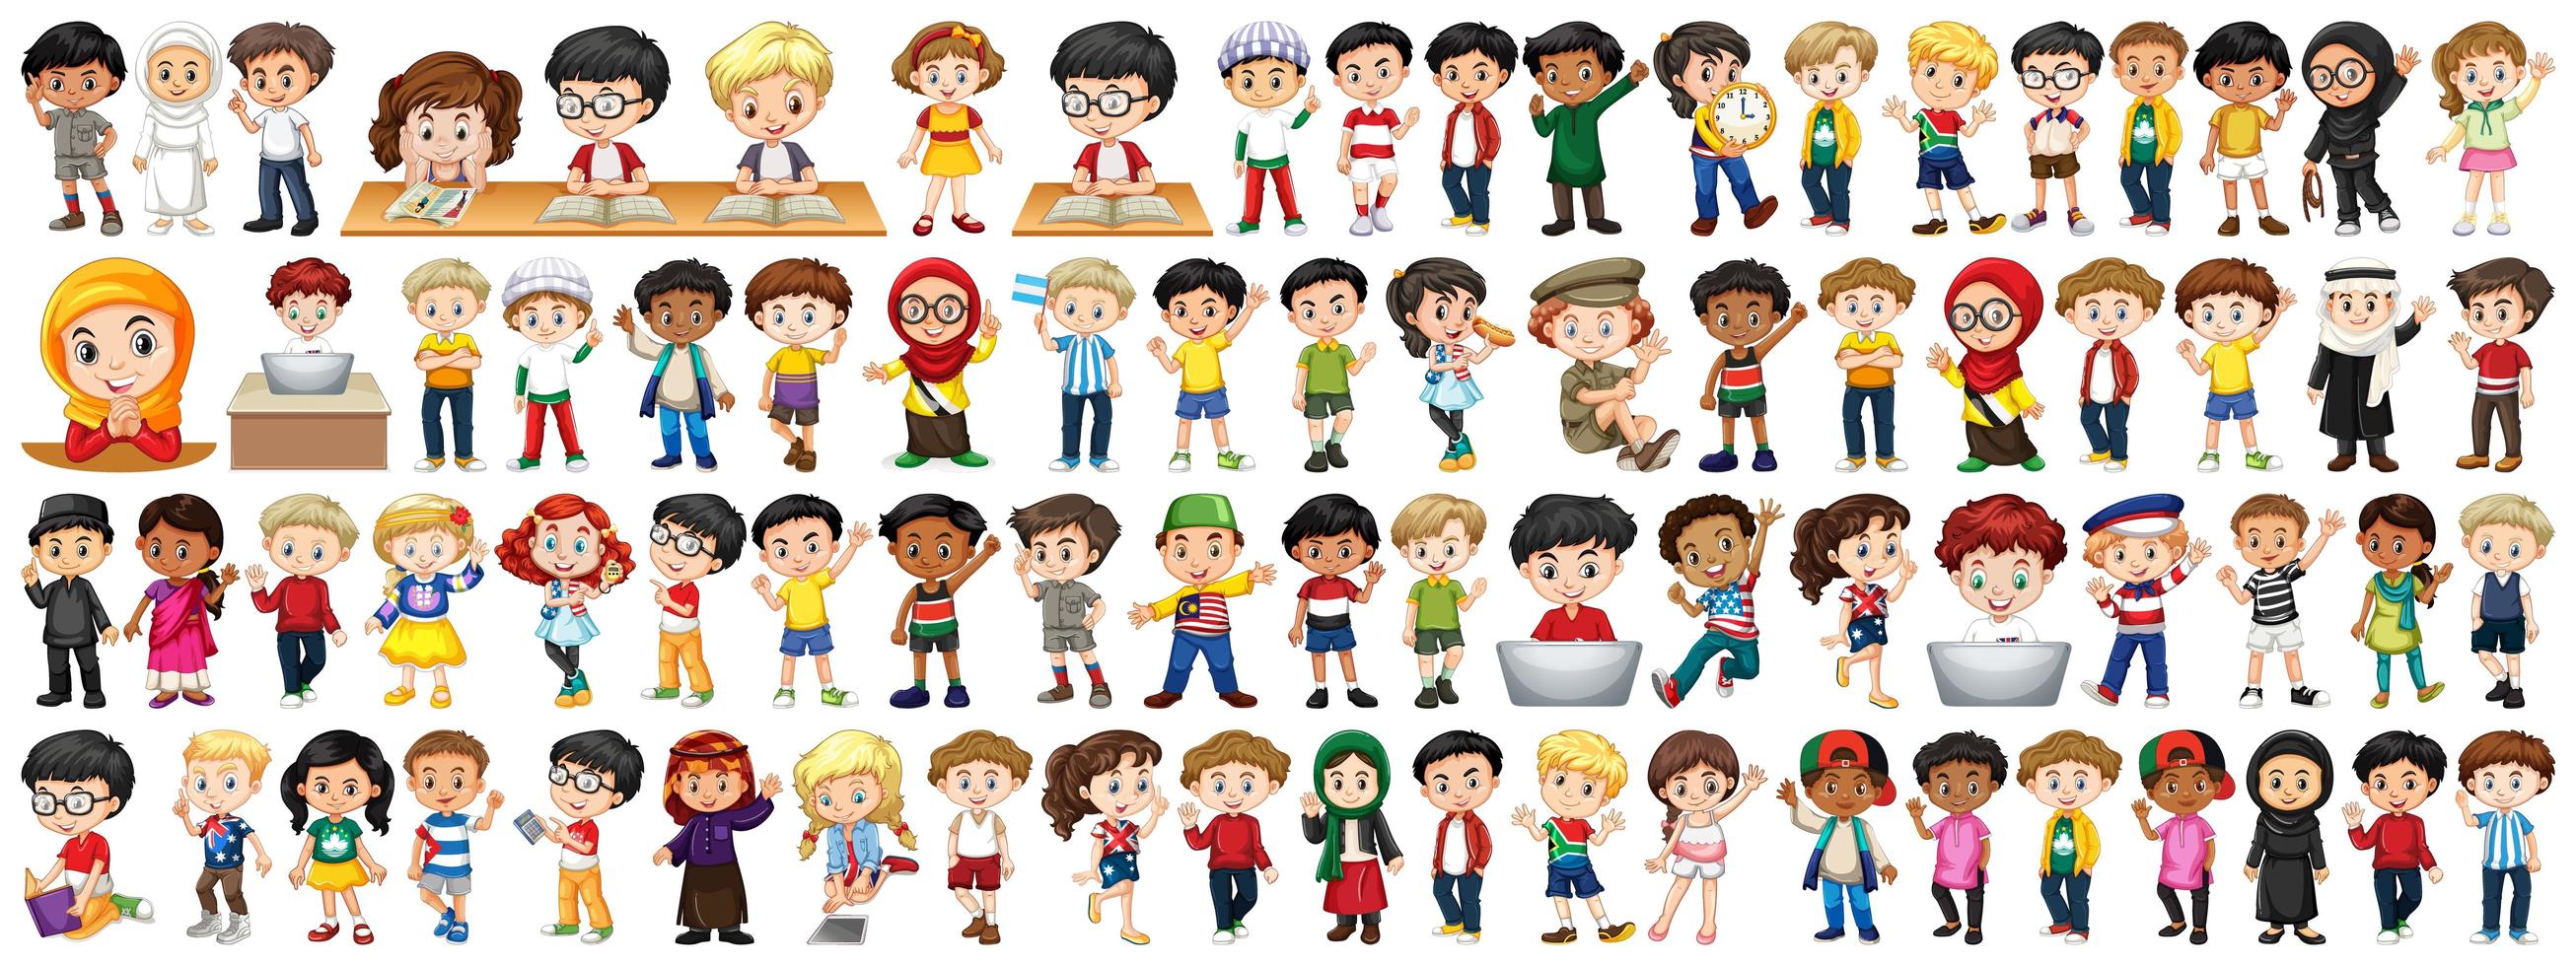 kinderen van verschillende nationaliteiten op witte achtergrond vector